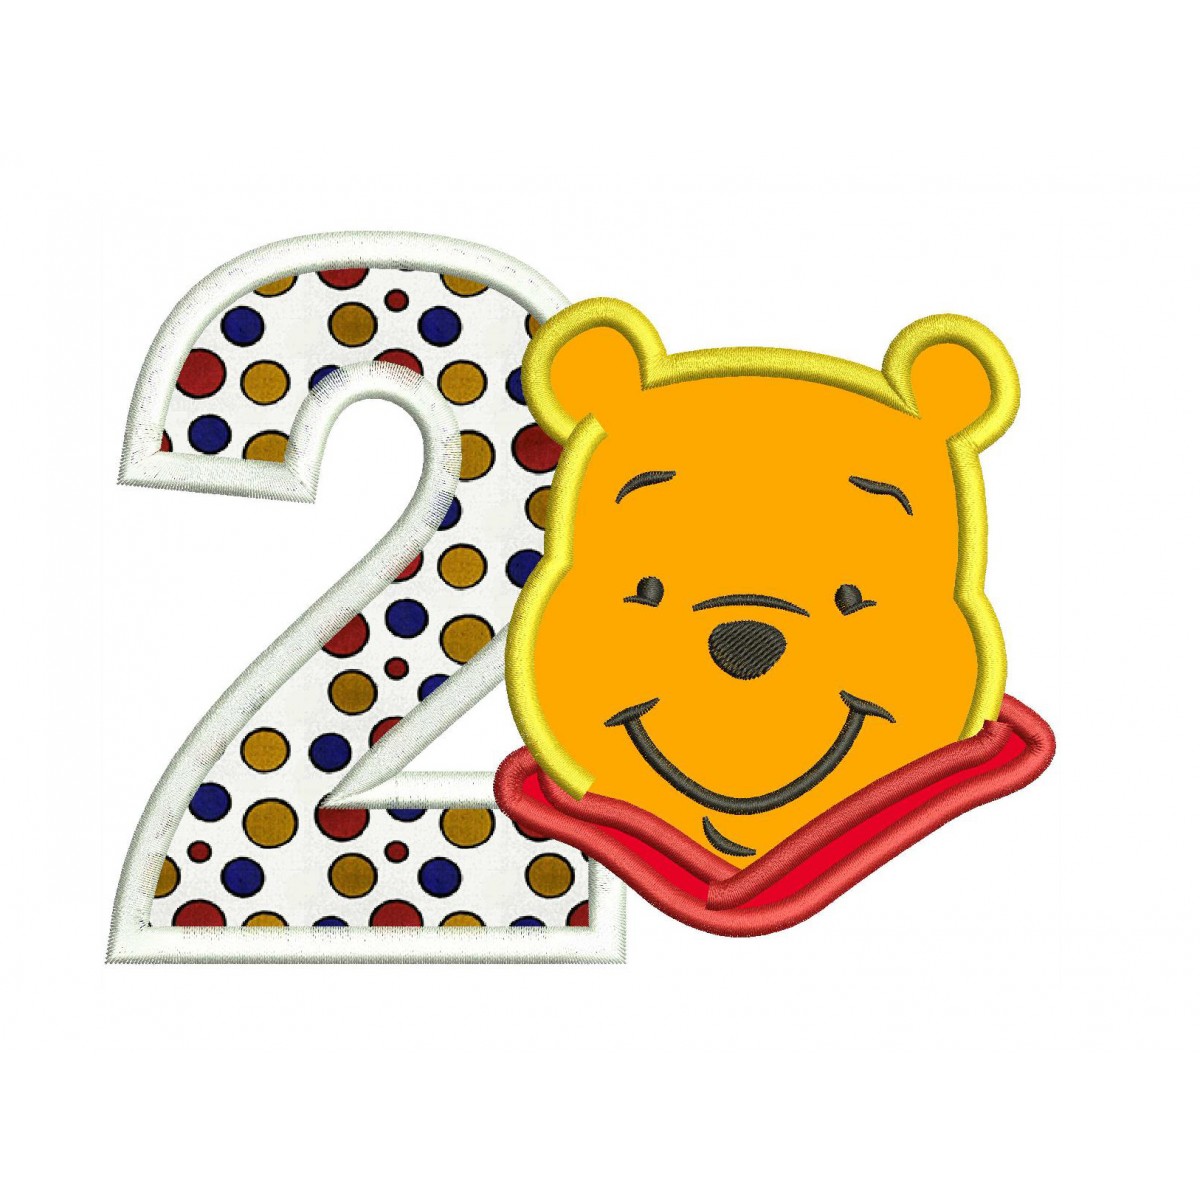 Winnie the Pooh 2nd Birthday Applique Design